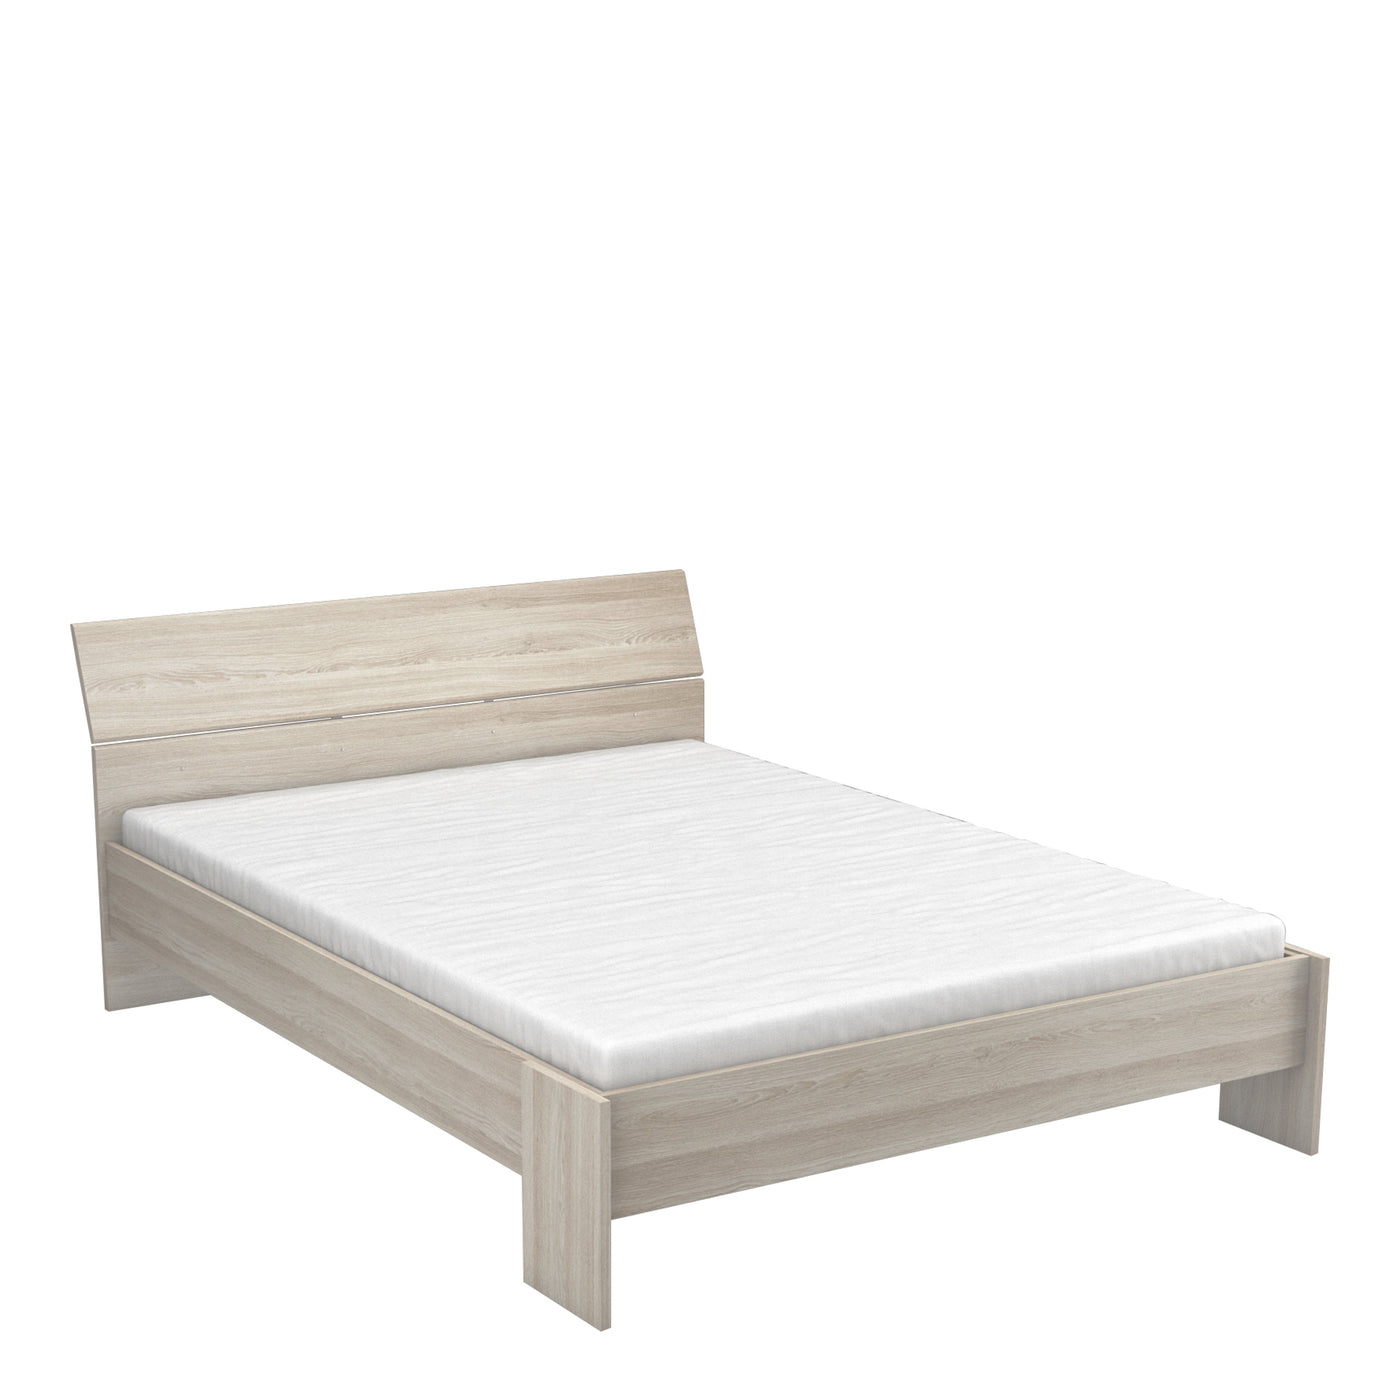 Modern licht houten tweepersoonsbed met een minimalistisch design en een hoog hoofdbord, perfect voor een eigentijdse slaapkamer.